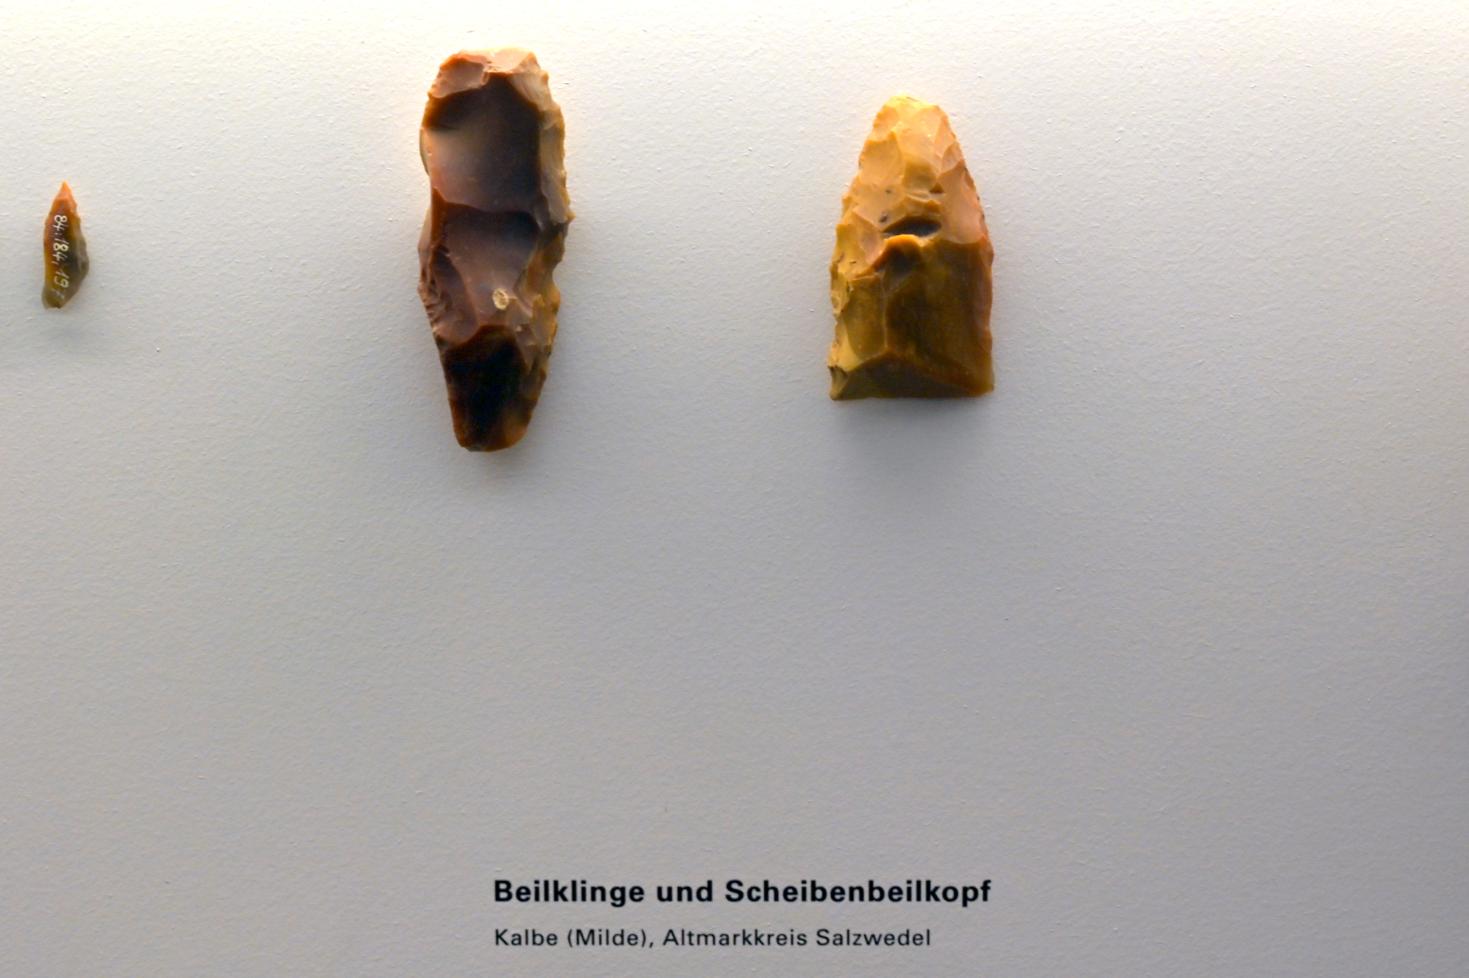 Beilklinge, Mesolithikum, 9500 - 5500 v. Chr.